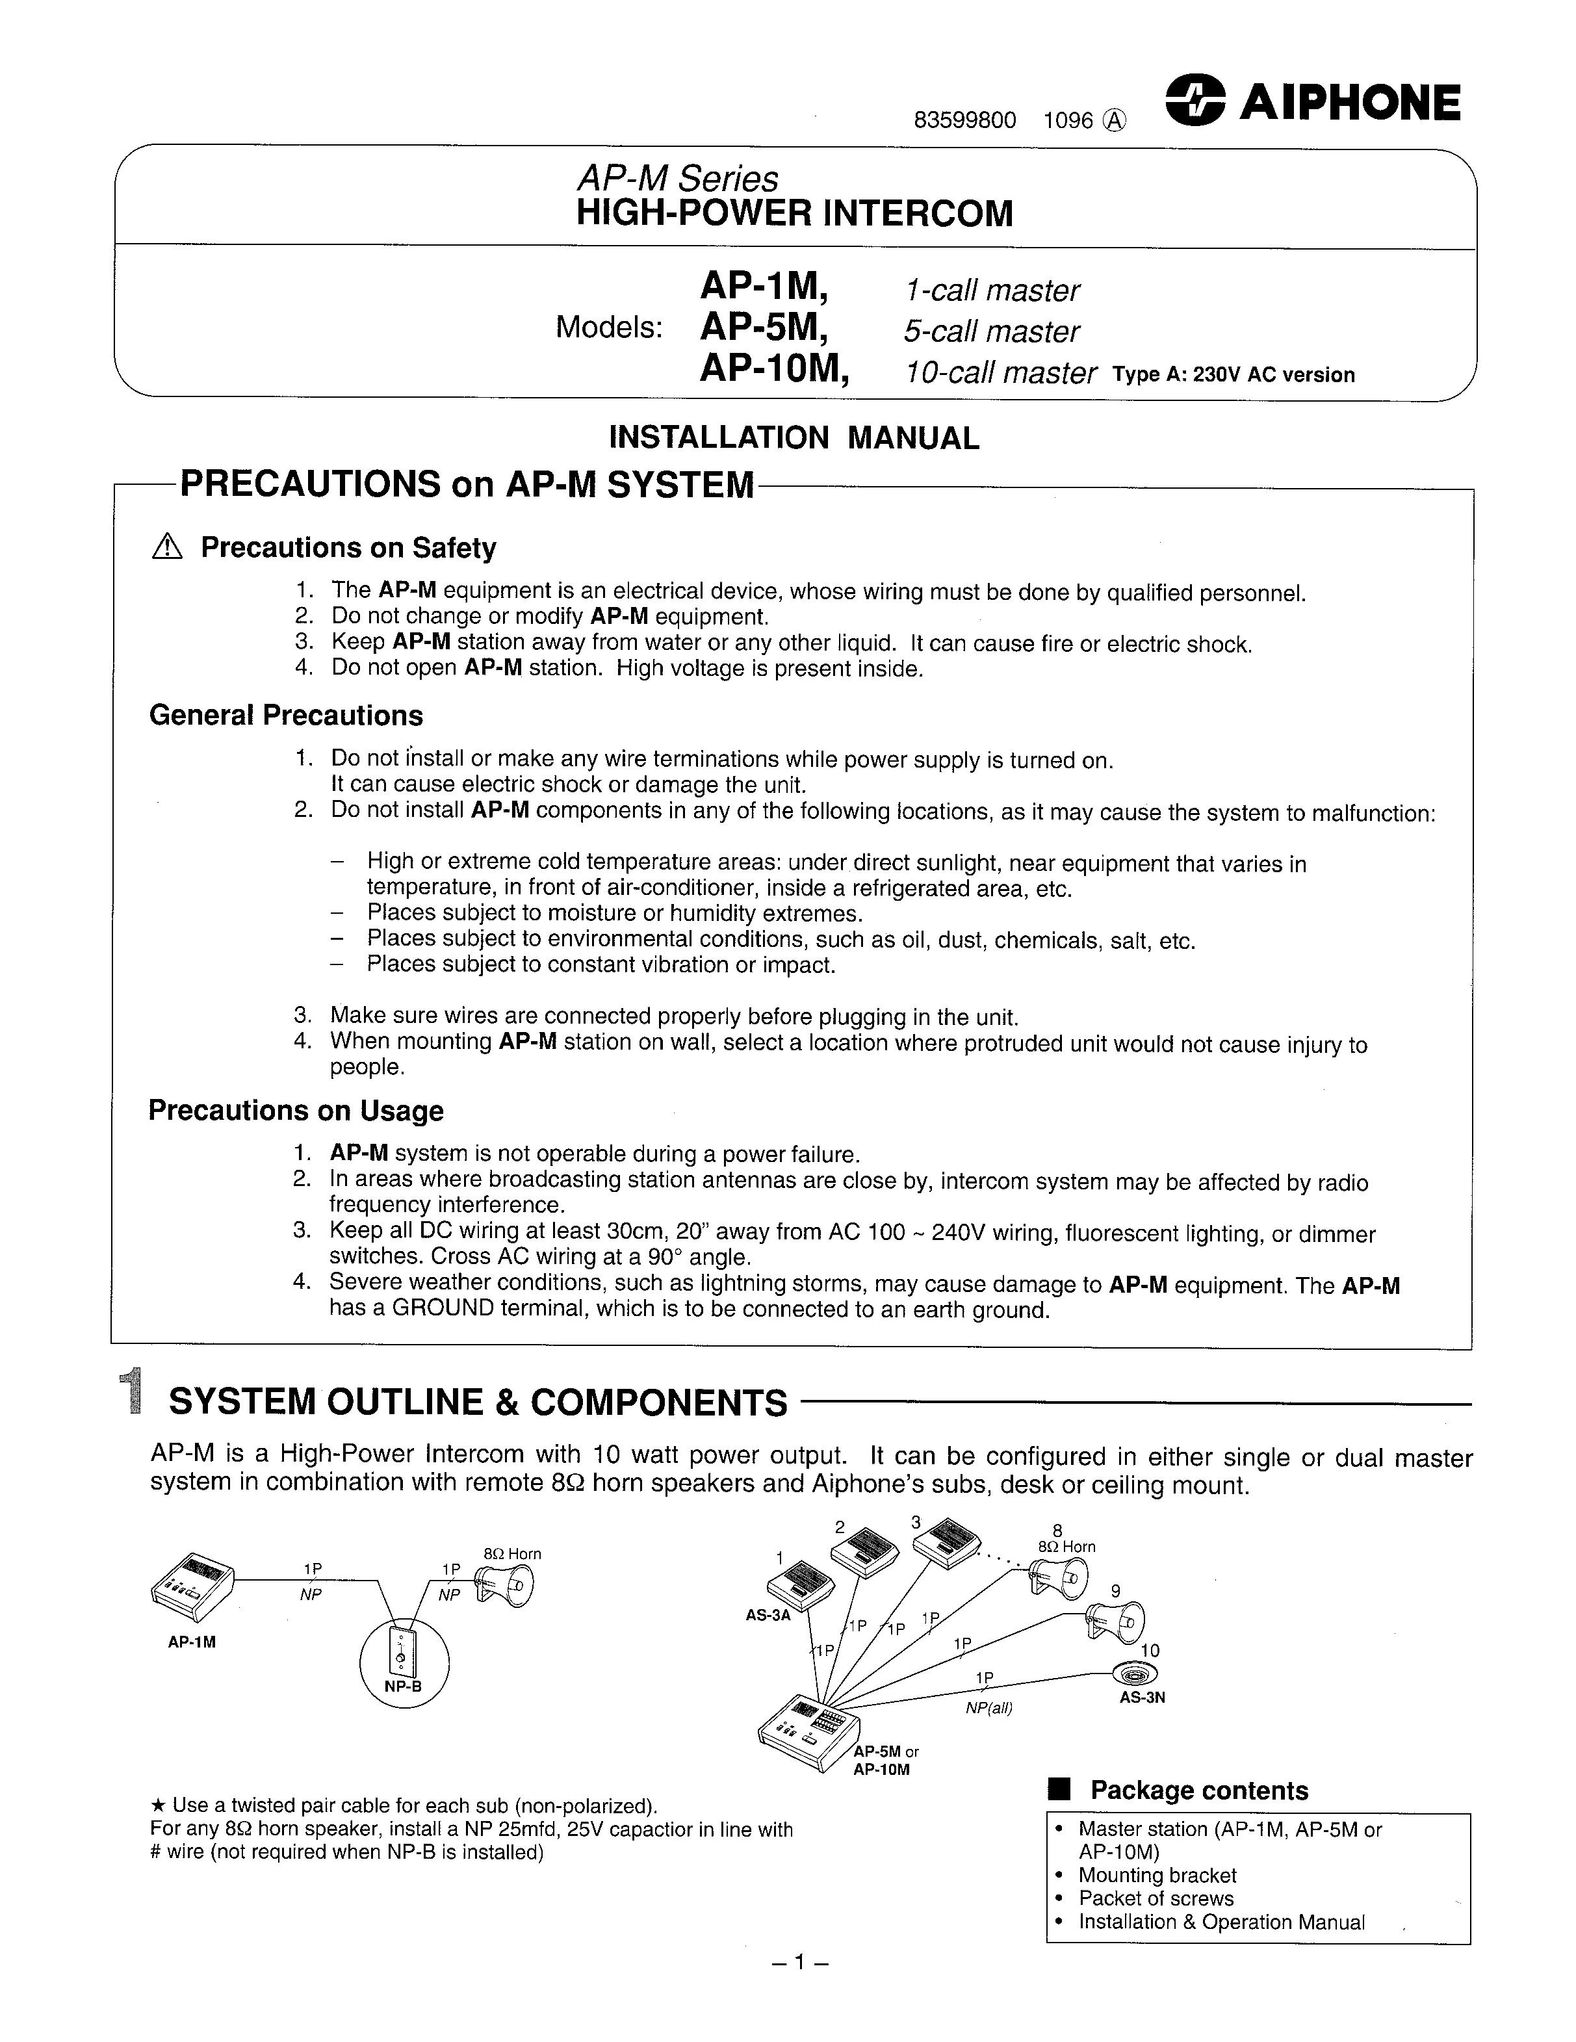 Aiphone AP-10M Saw User Manual